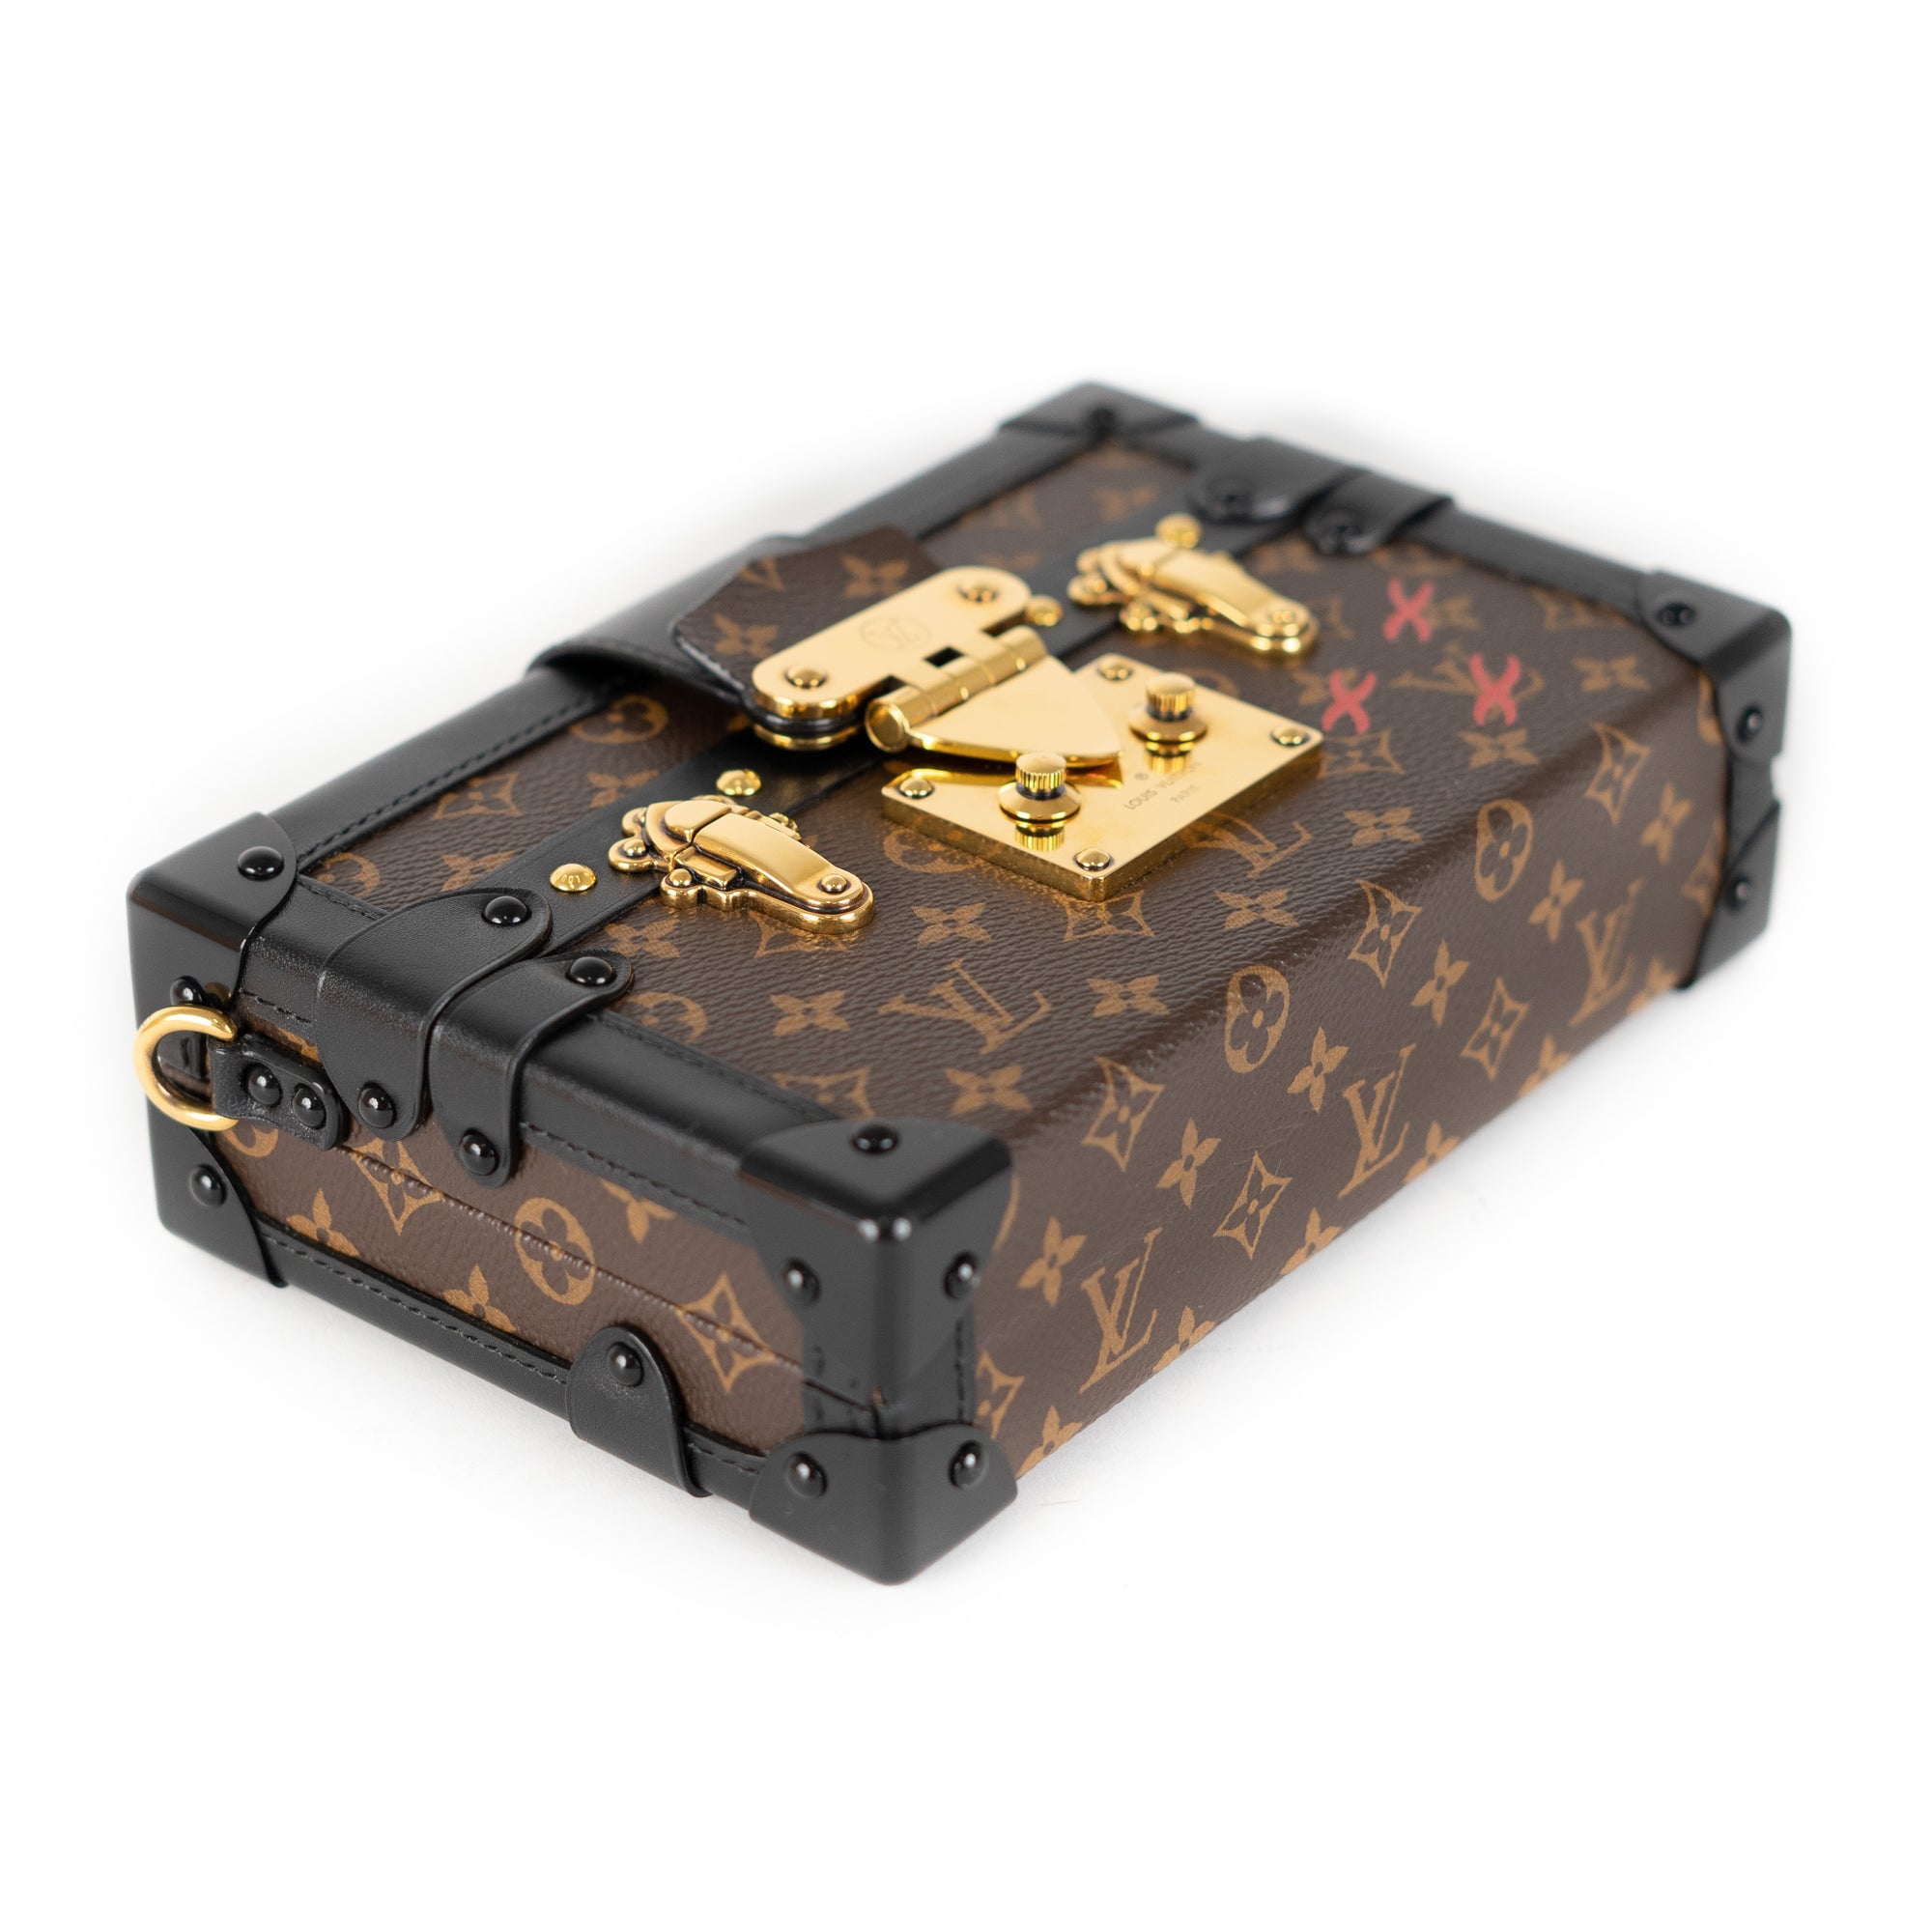 Louis Vuitton Malle Shoulder bag 396863